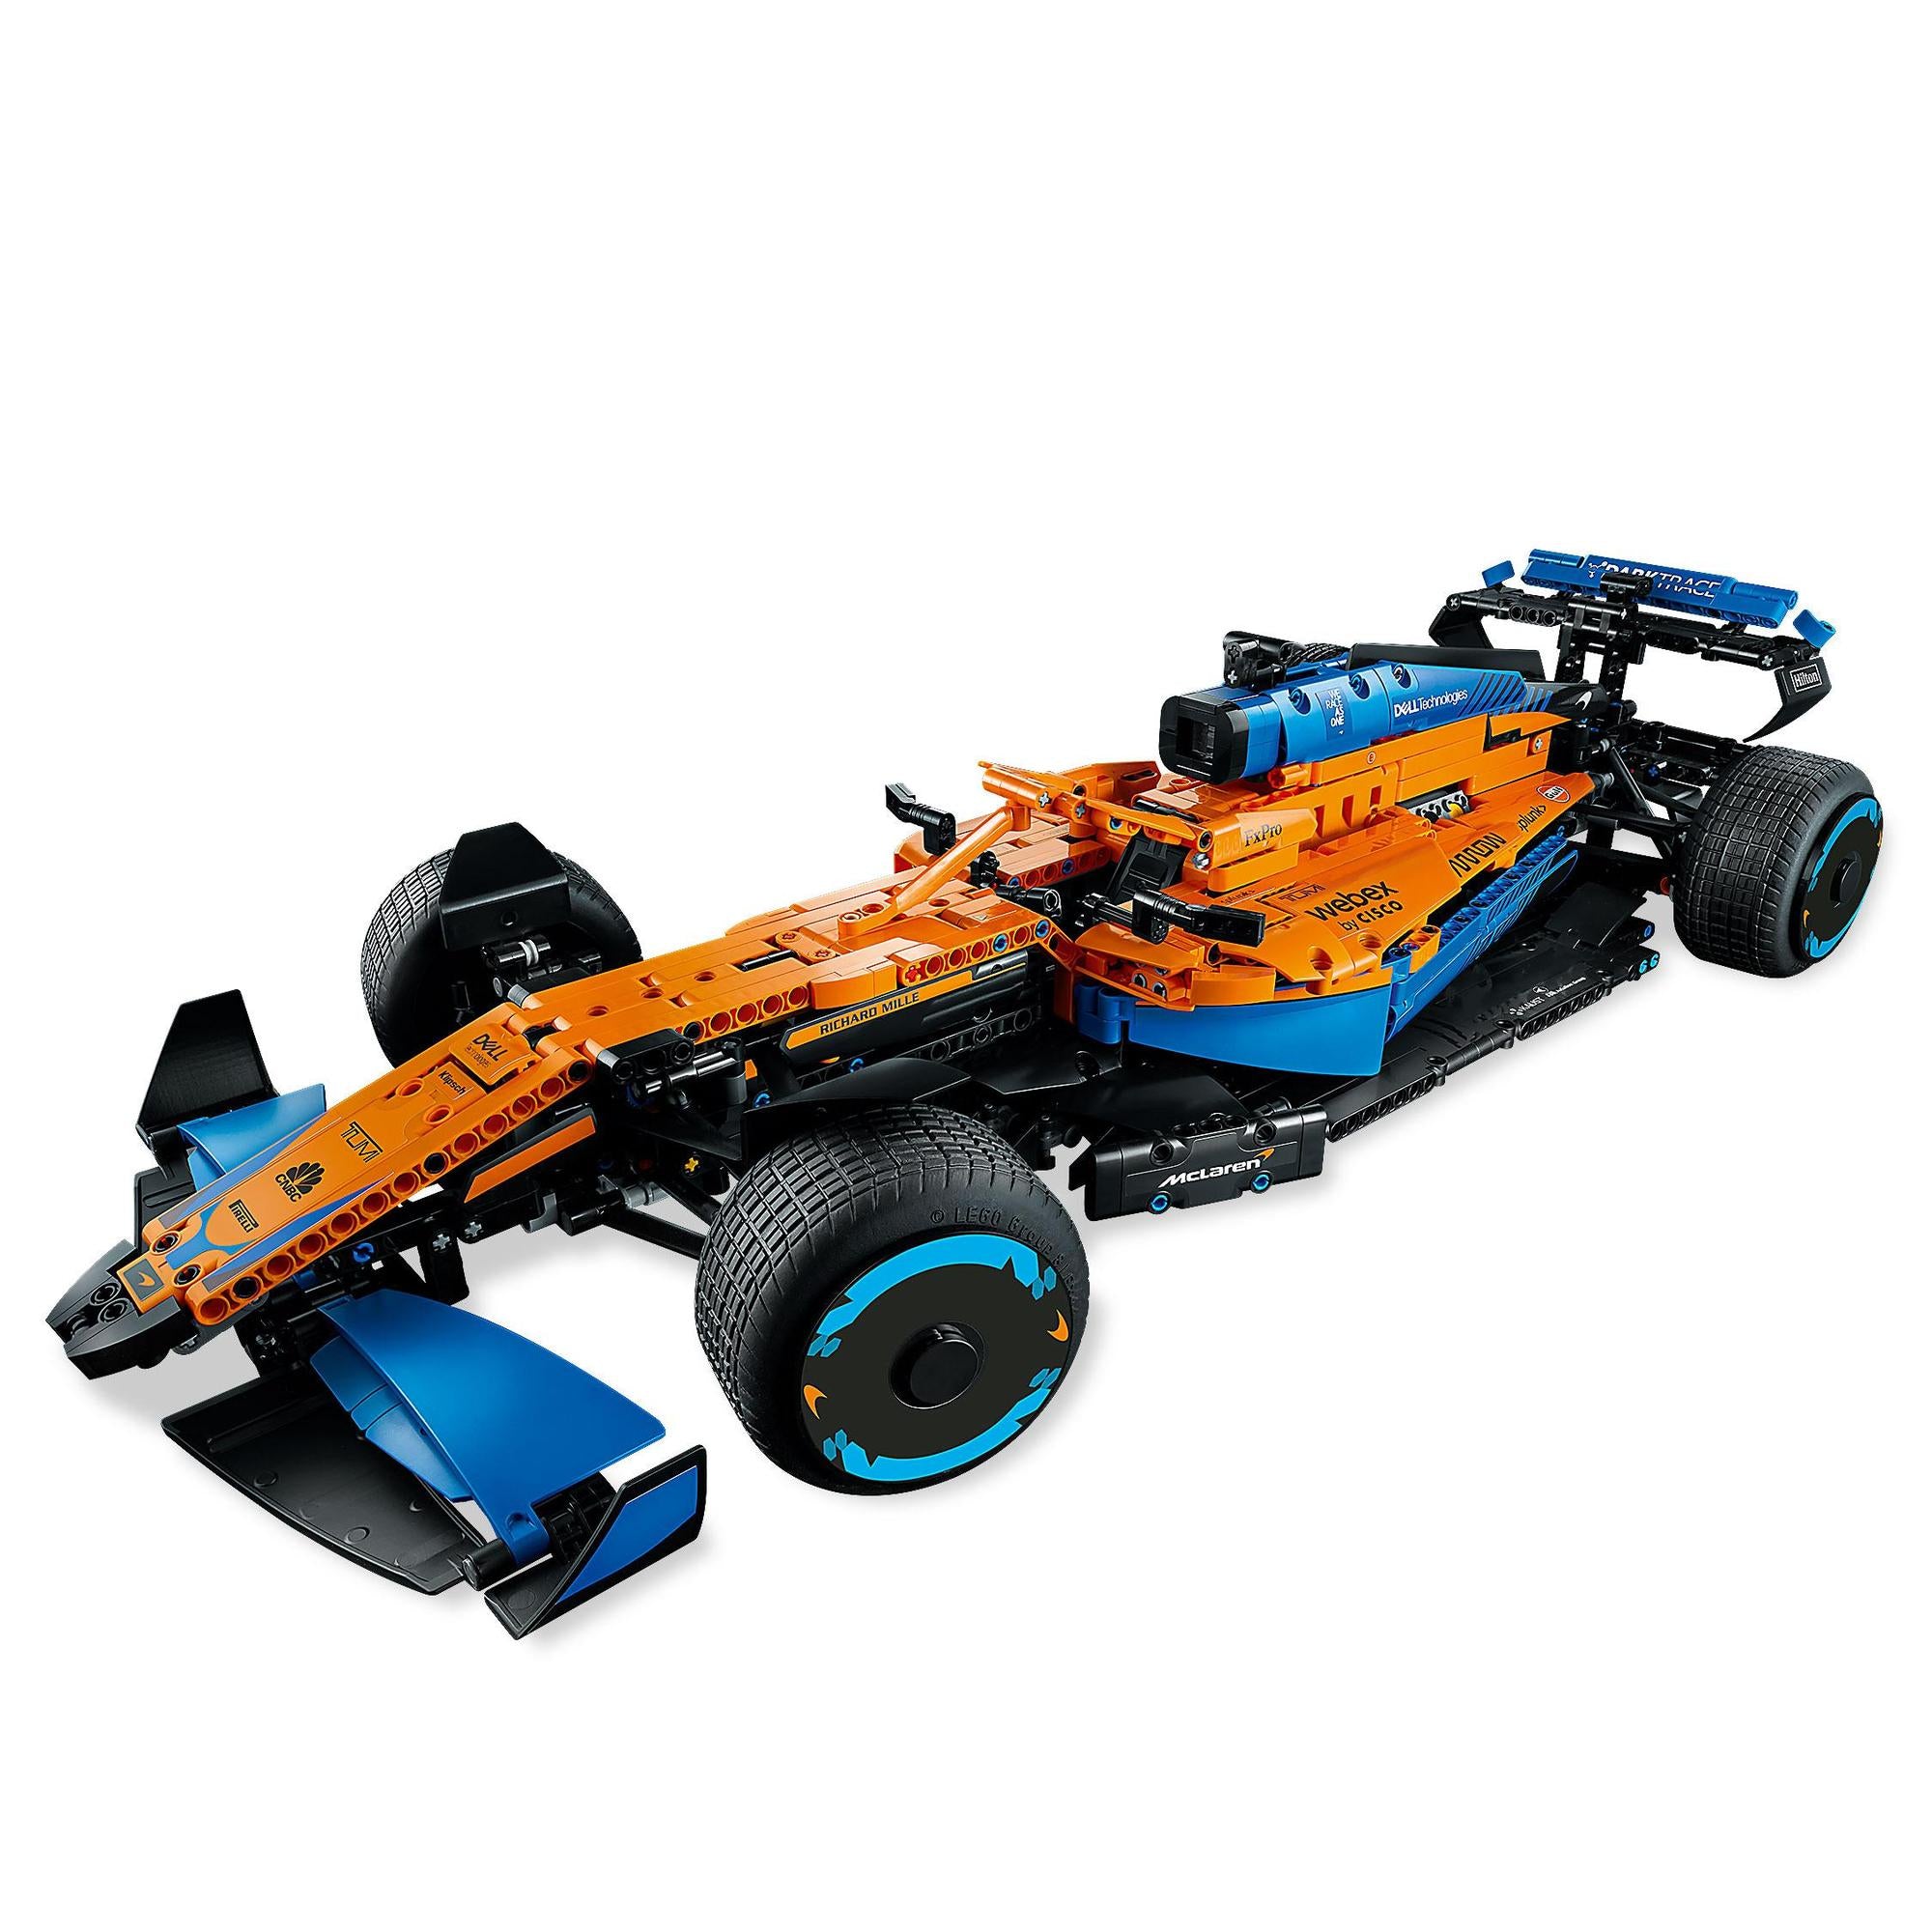 LEGO® | 42141 | McLaren Formel 1 Rennwagen